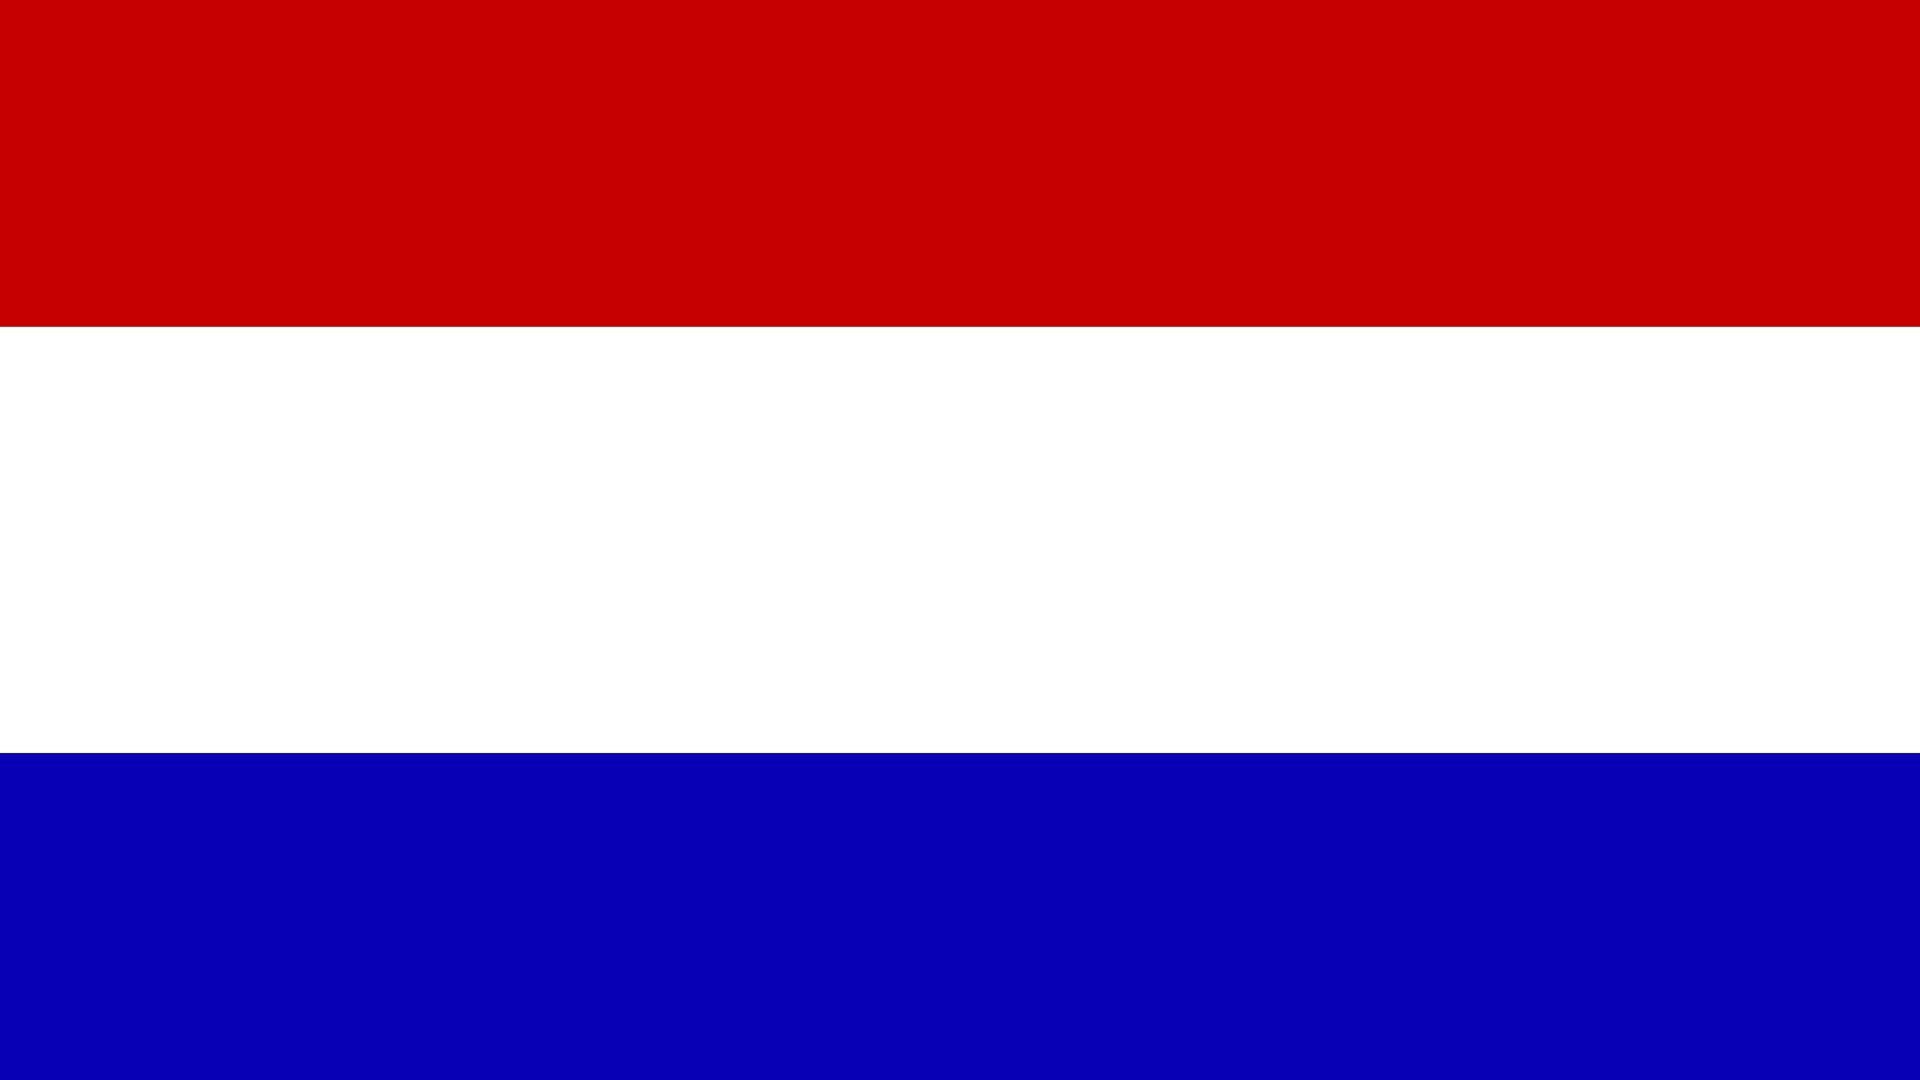 A bandeira dos Países Baixos é um dos símbolos oficiais deste país. Consiste em três faixas horizontais nas cores vermelho, branco e azul.